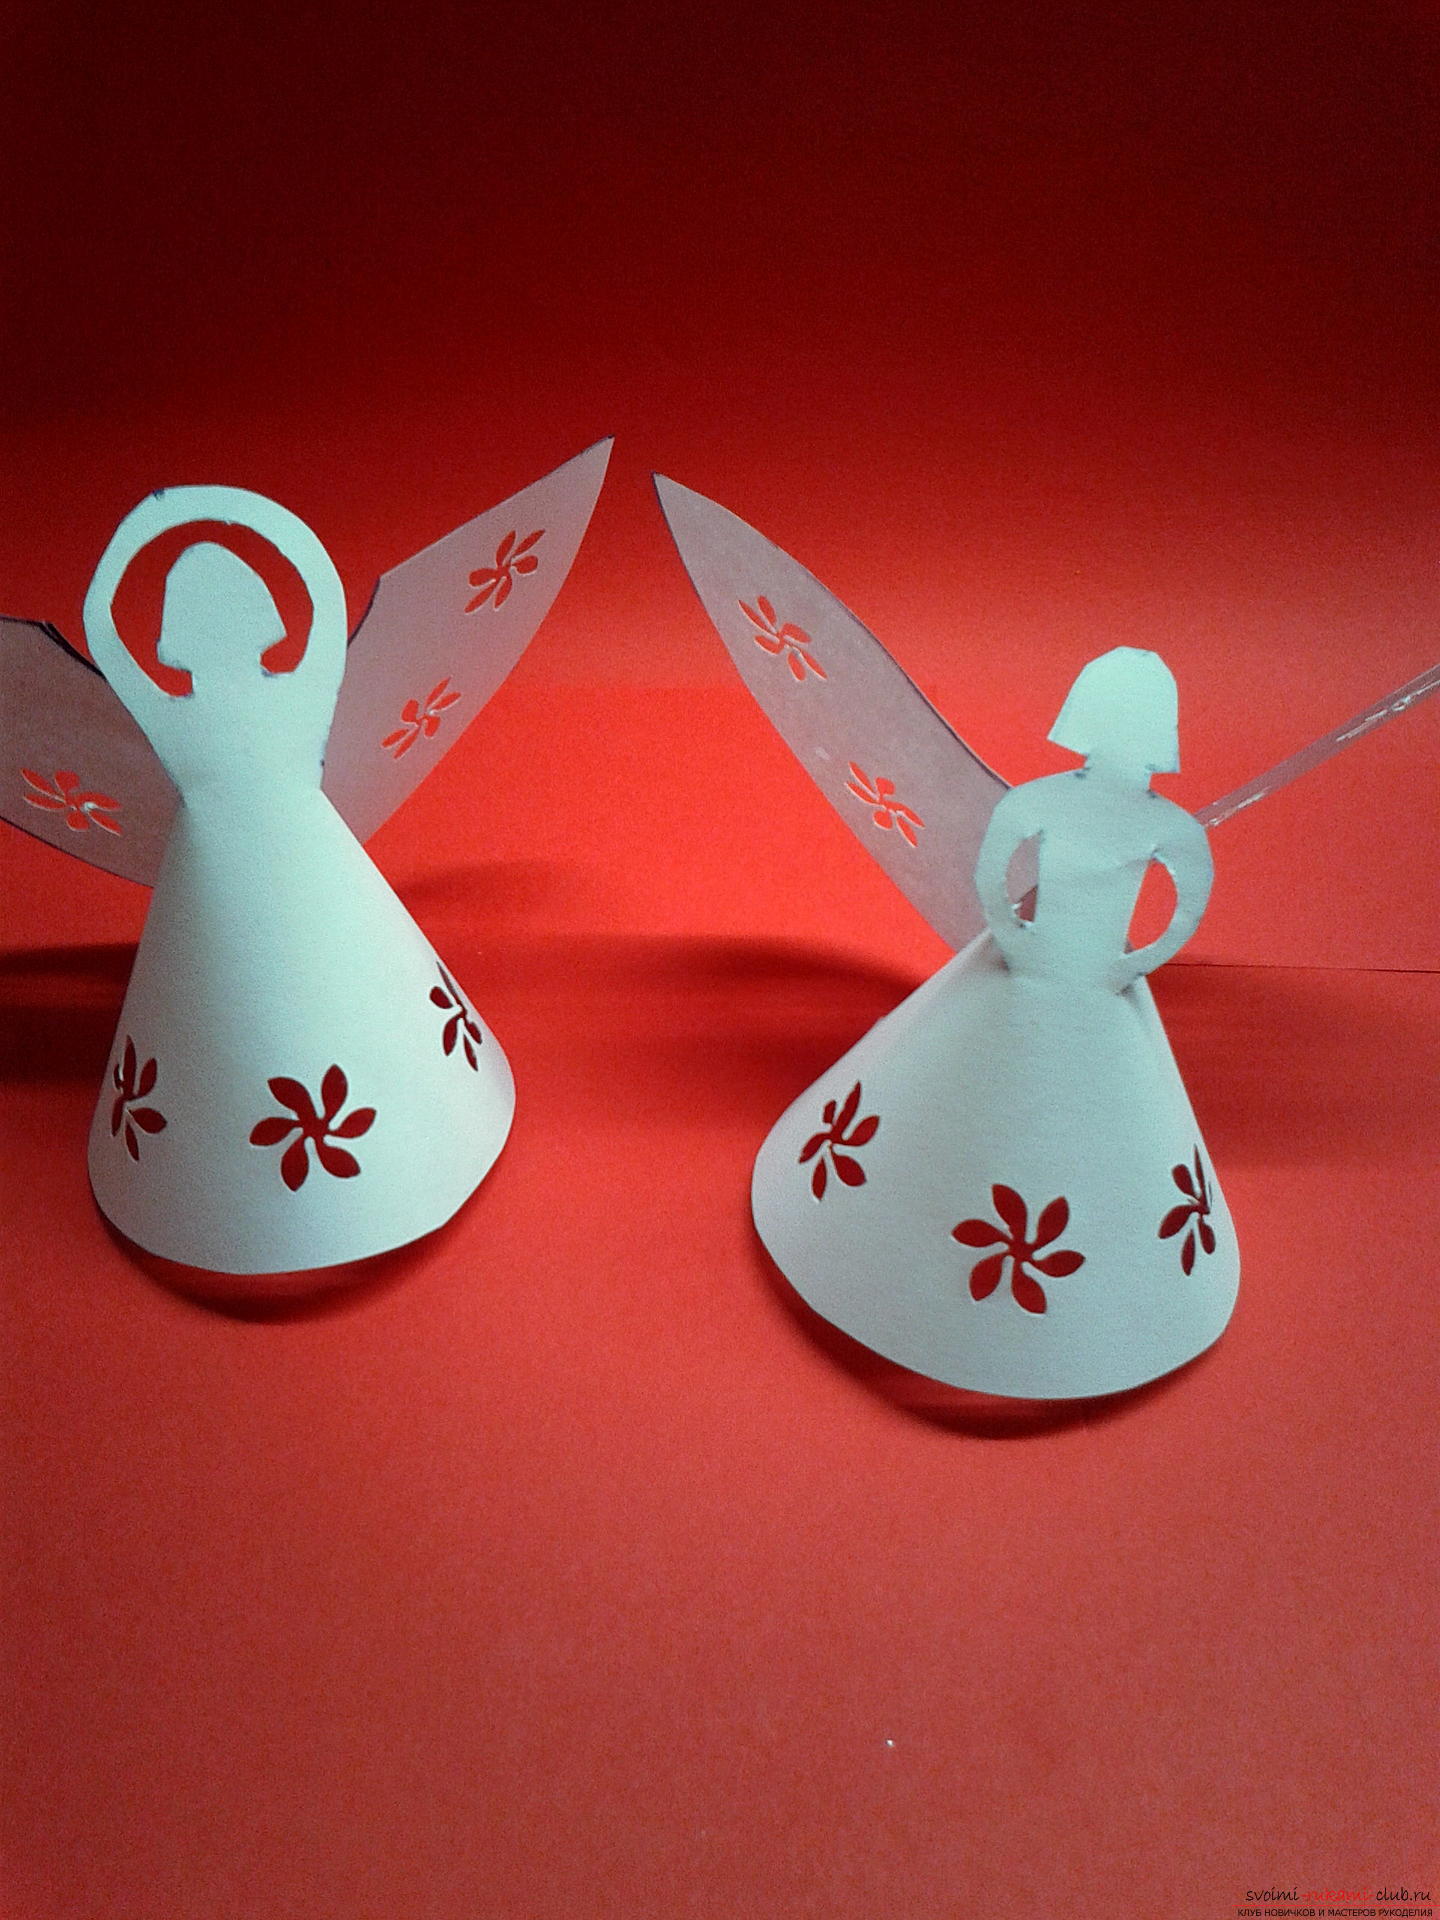 Deze masterclass beschrijft het proces van het maken van oudejaarsambachten. Mooie engel van papier werden gemaakt als decoraties op de kerstboom. Foto # 12